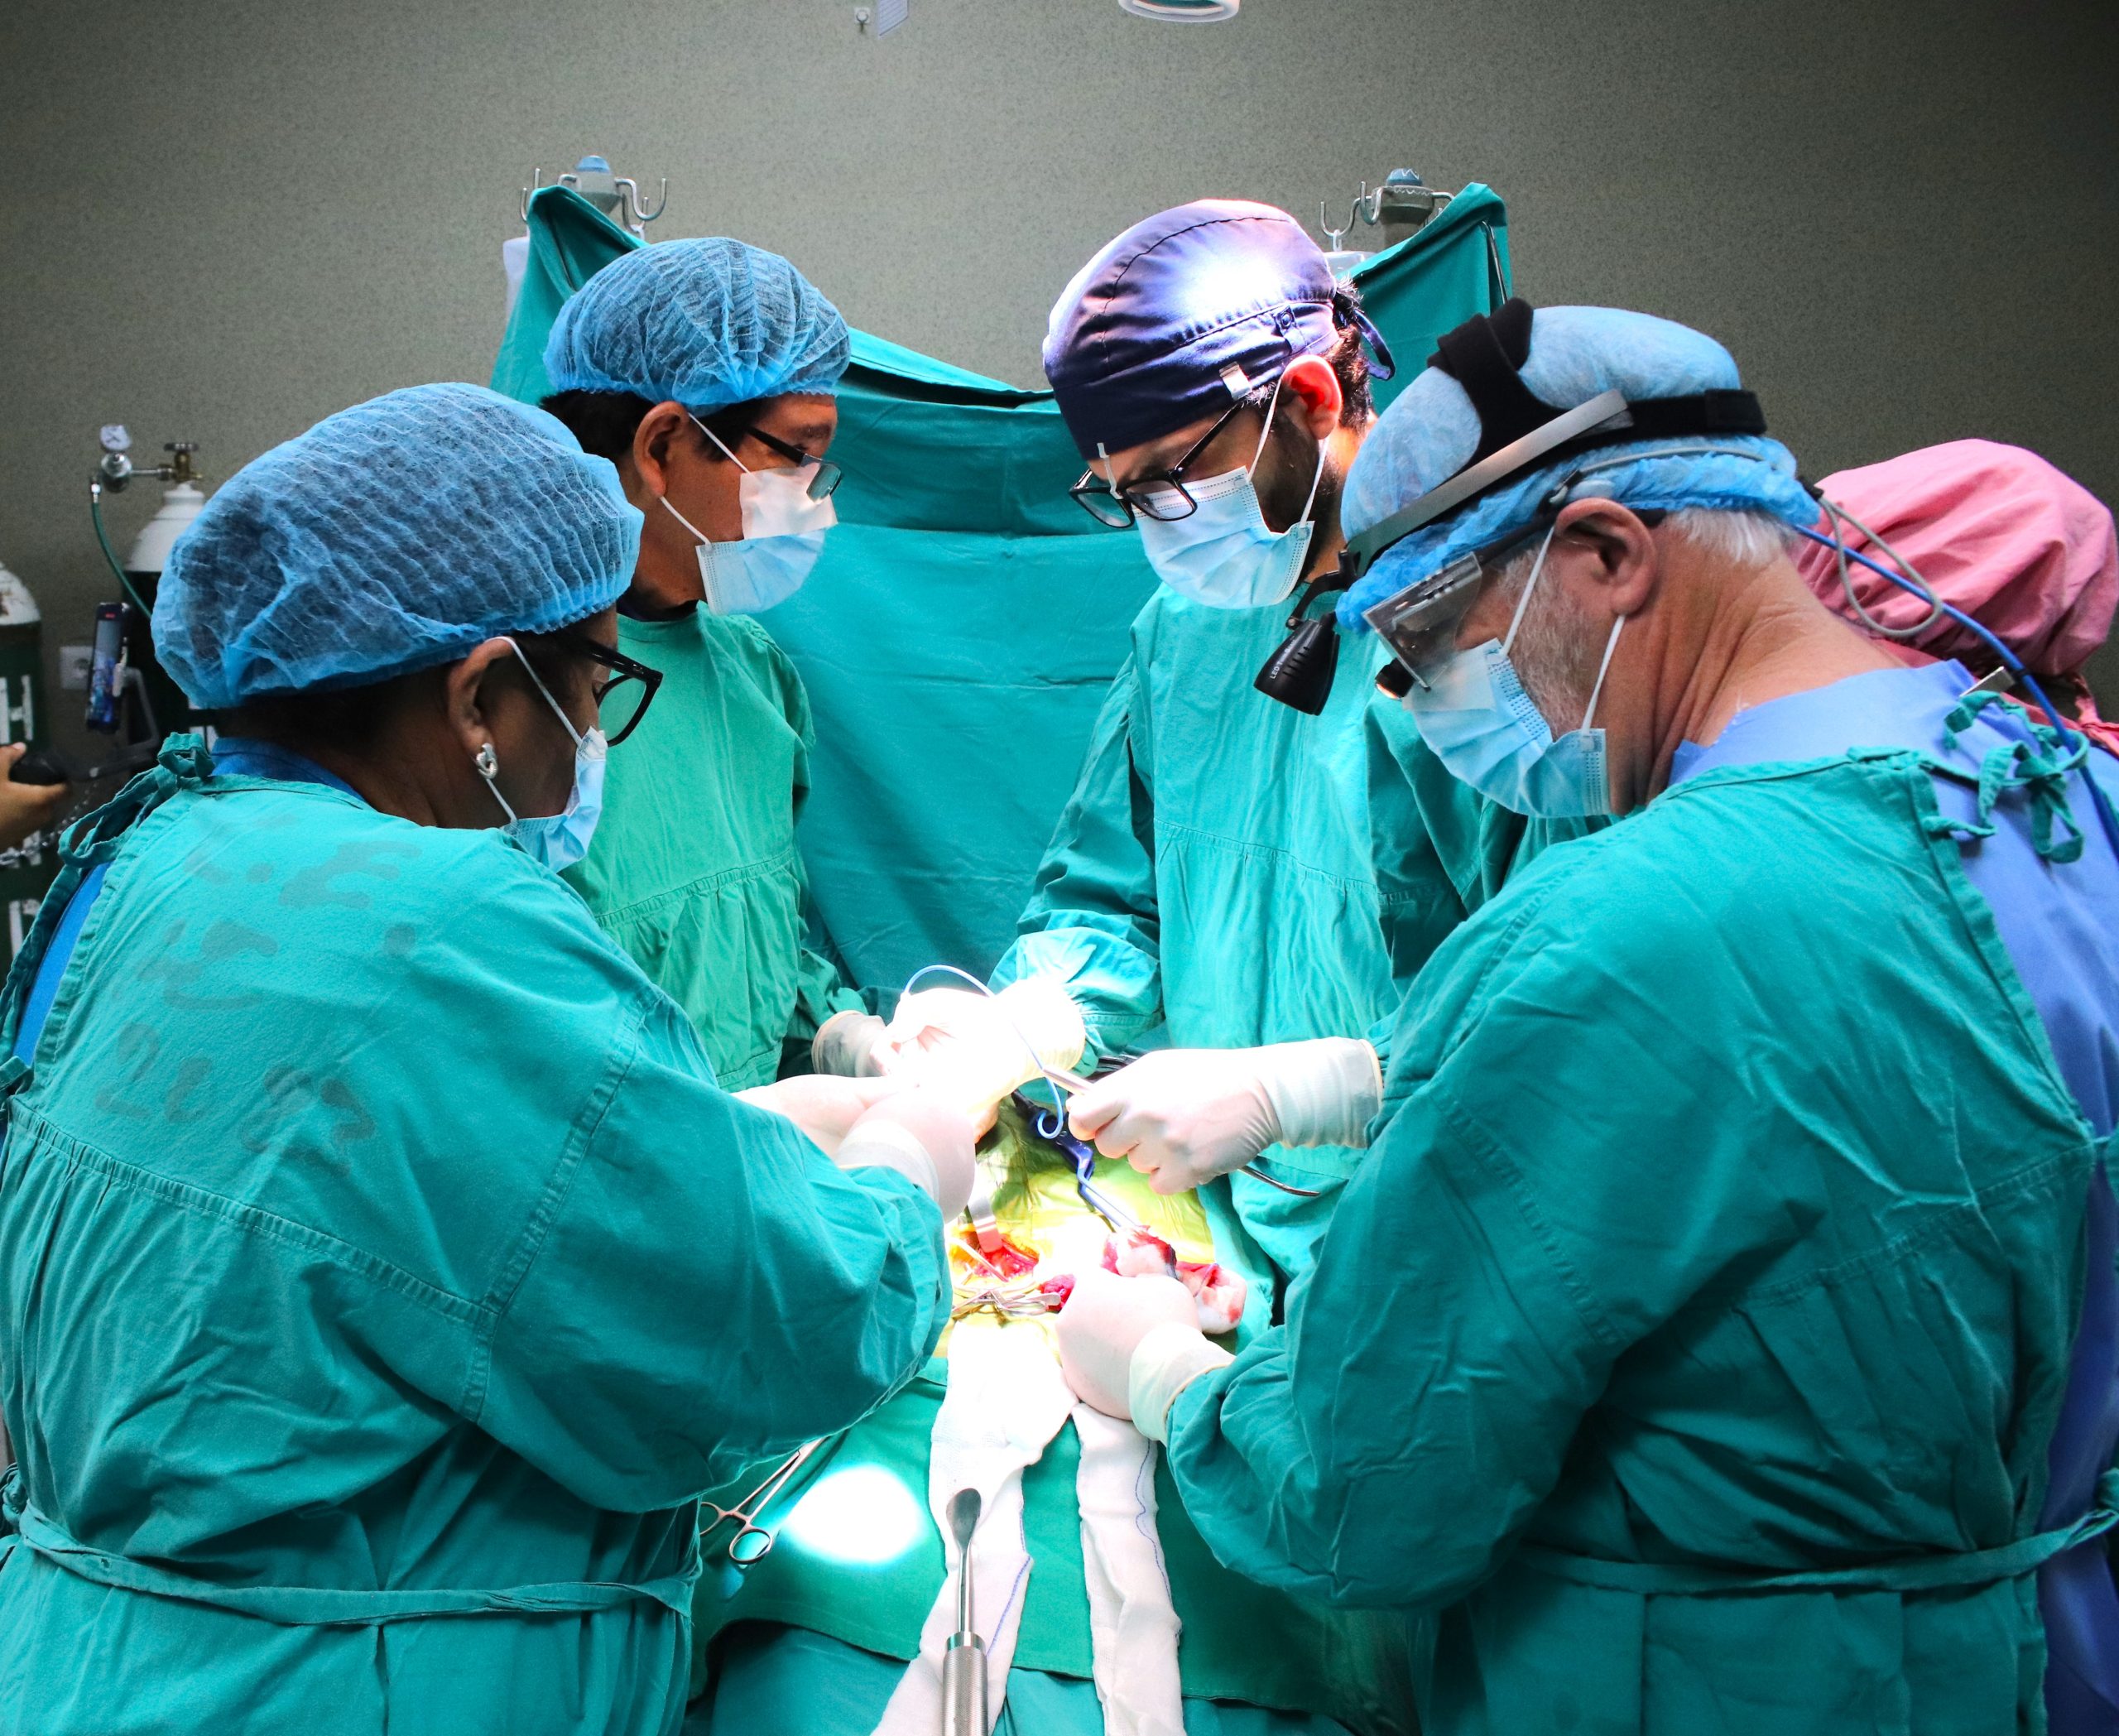 El Hospital Carrión se une a la ONG Dreaming & Working Together para realizar cirugías gratuitas y entregar prótesis